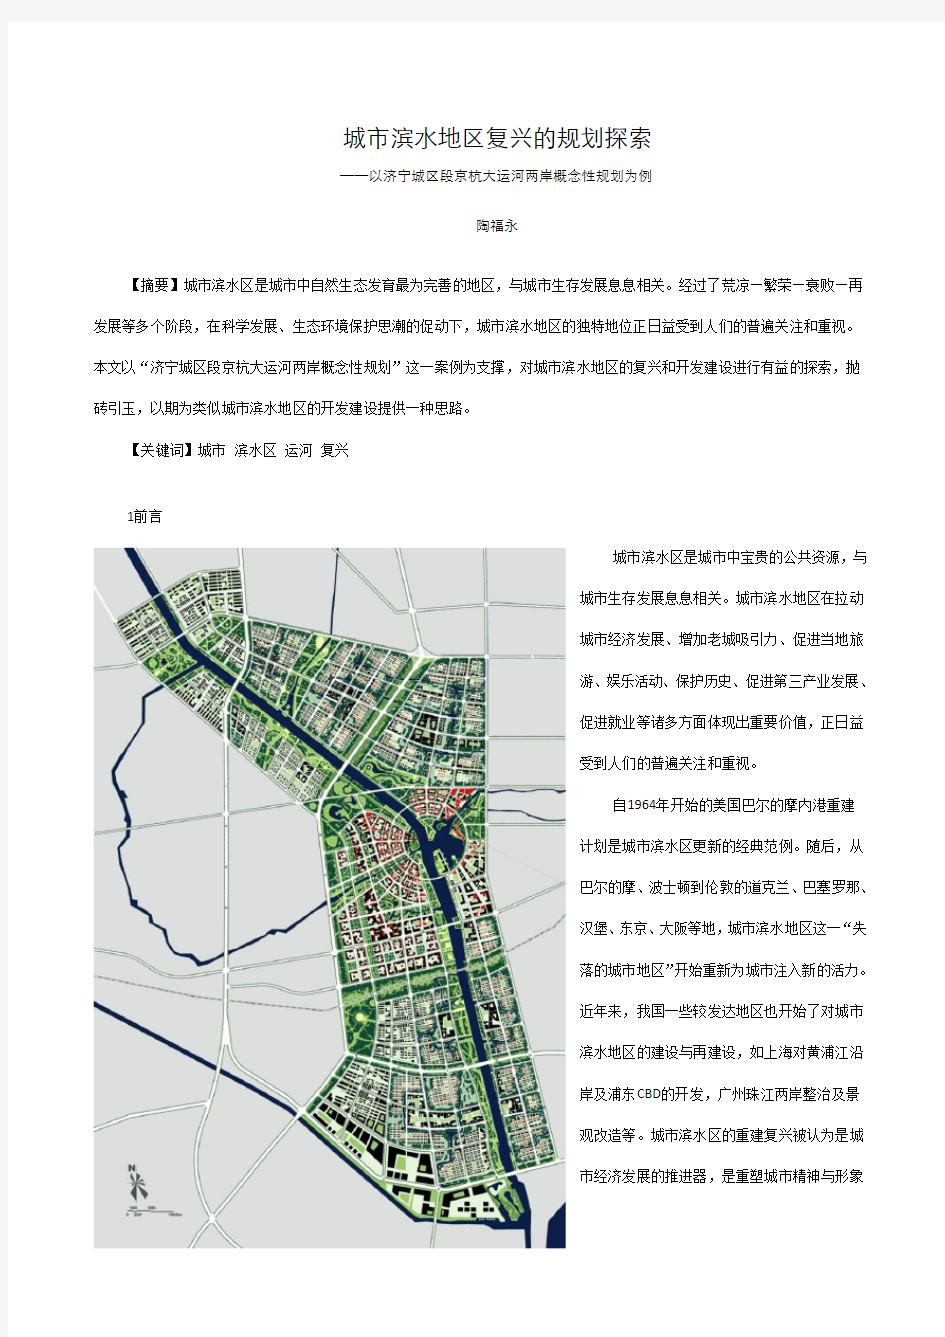 济宁城区段京杭大运河两岸概念性规划